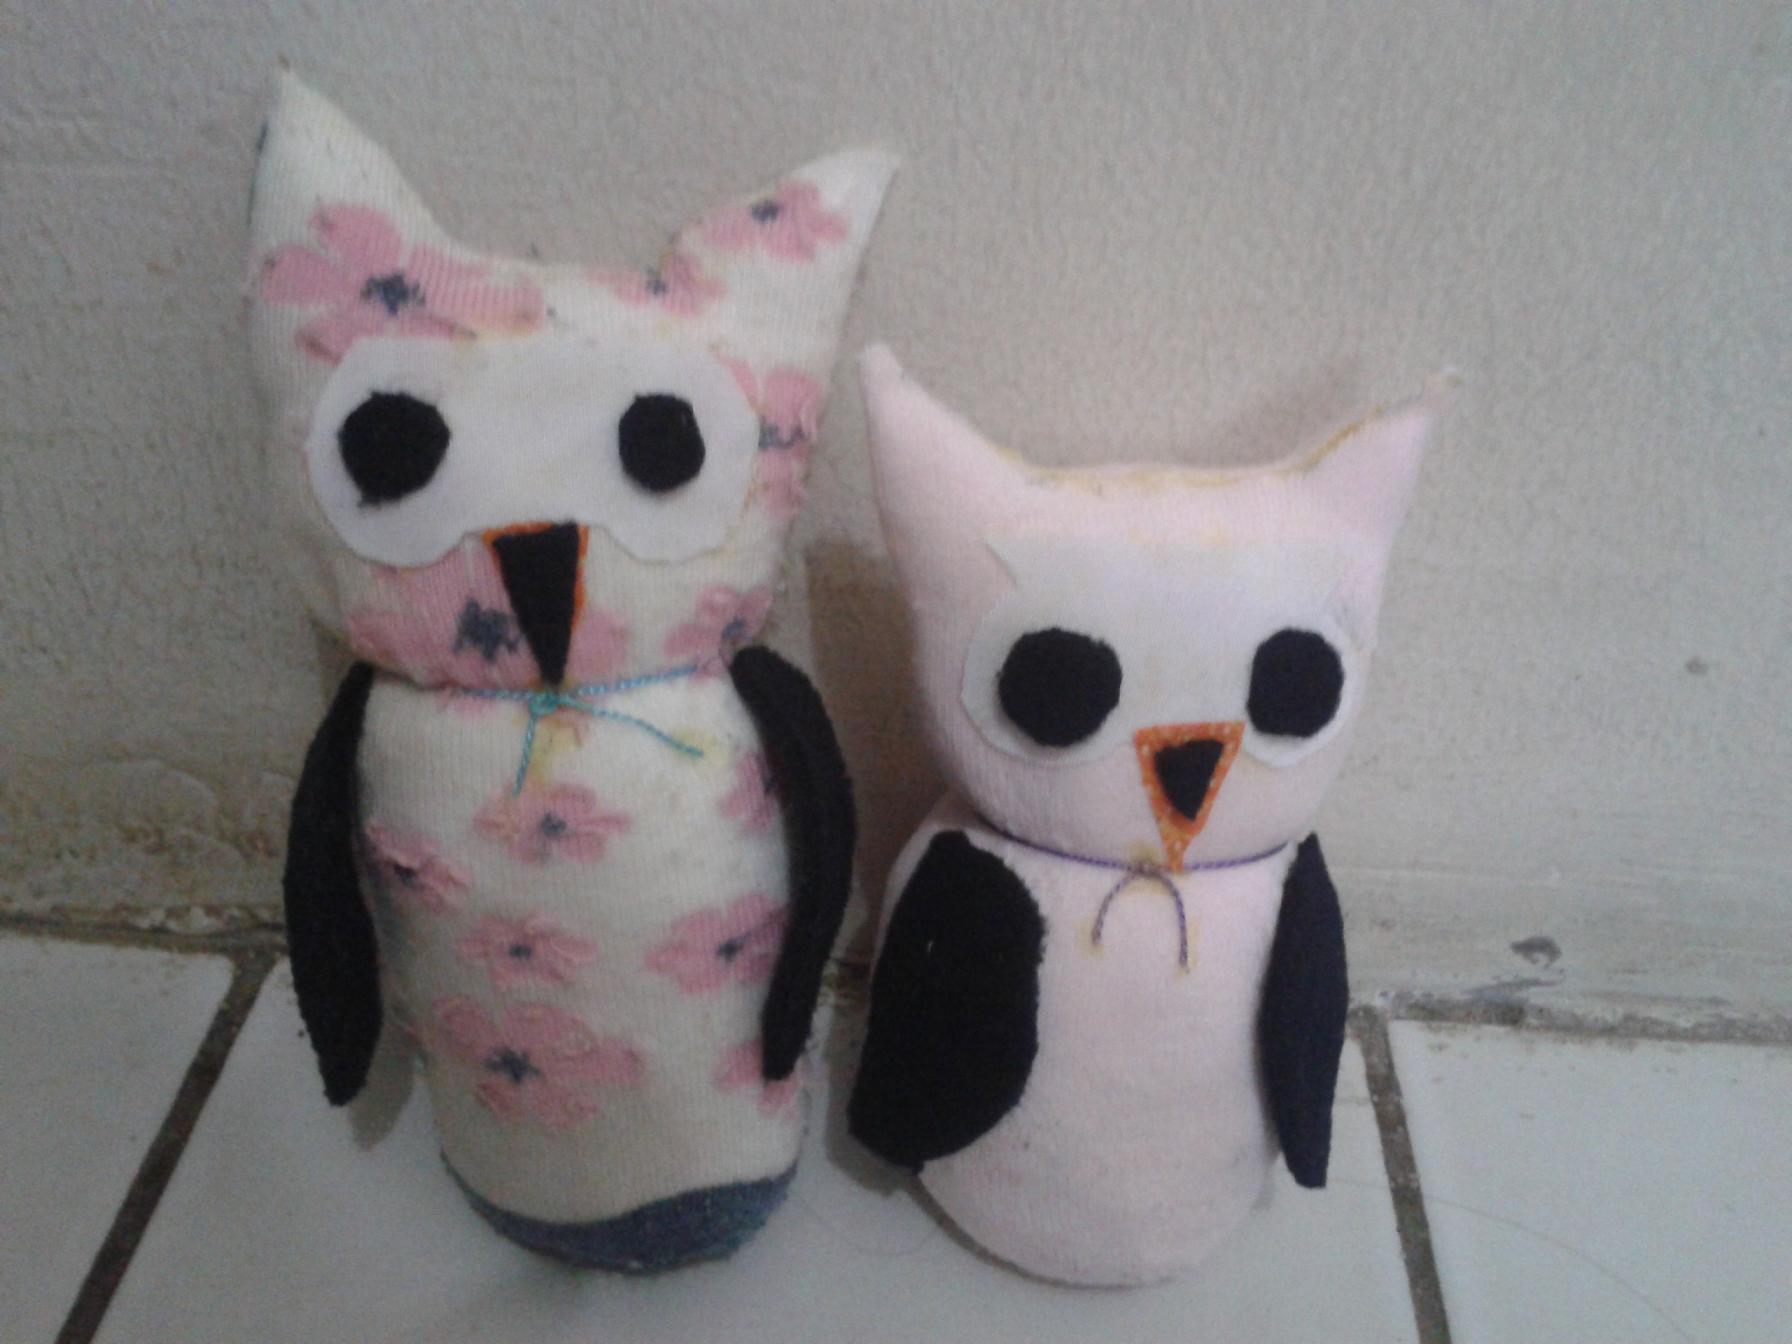 Membuat Sendiri Boneka Owl Dari Kaos Kaki Bekas Agus Sugiyonos Blog